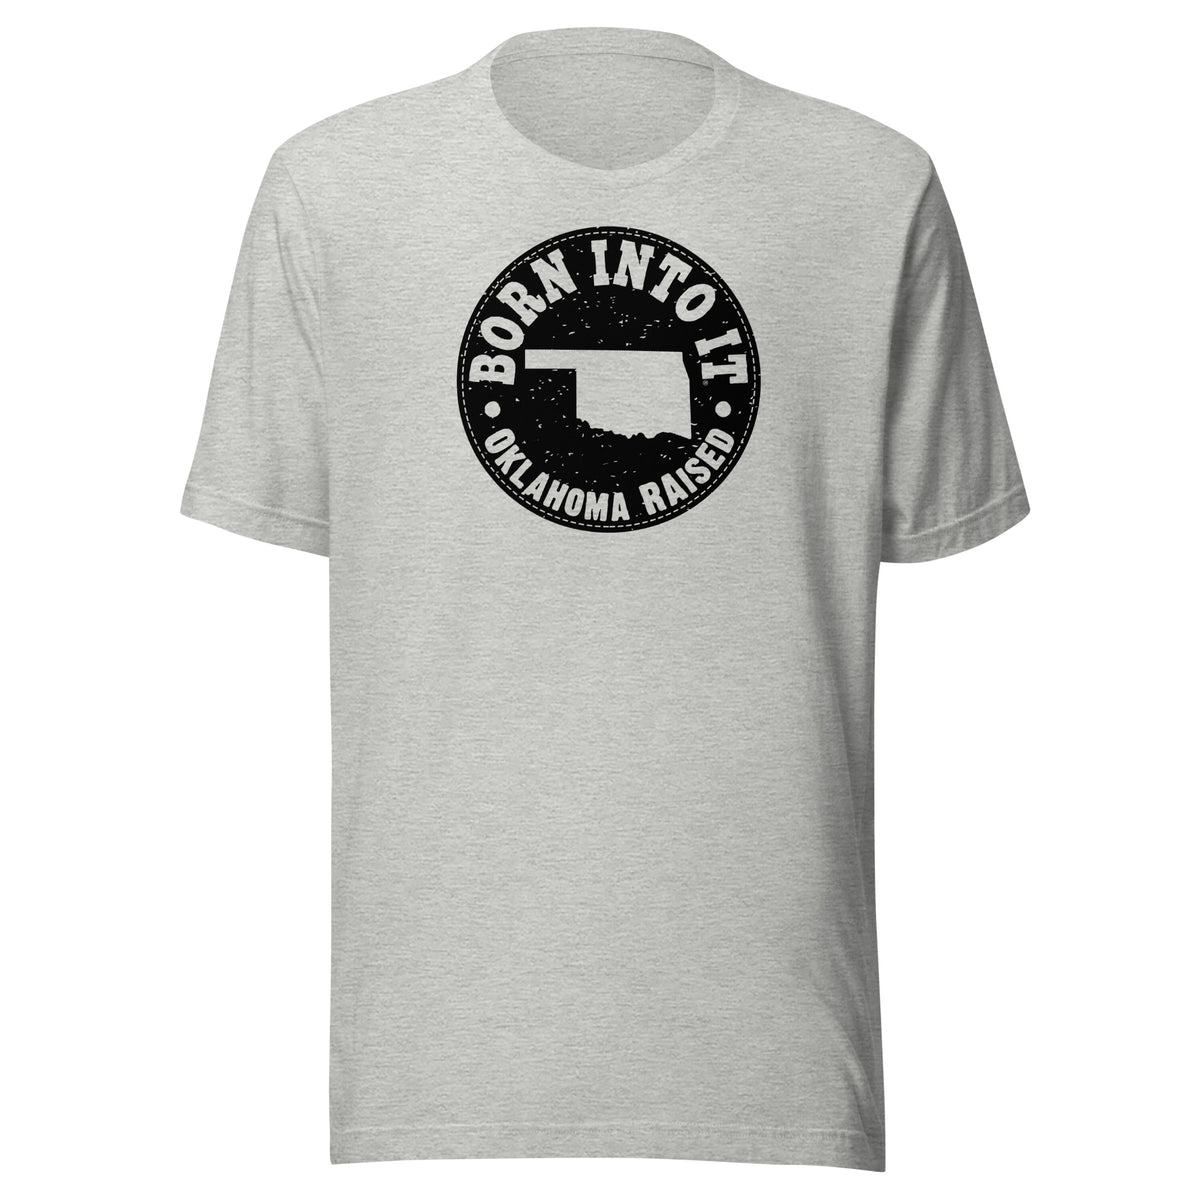 Oklahoma Raised Unisex T-Shirt